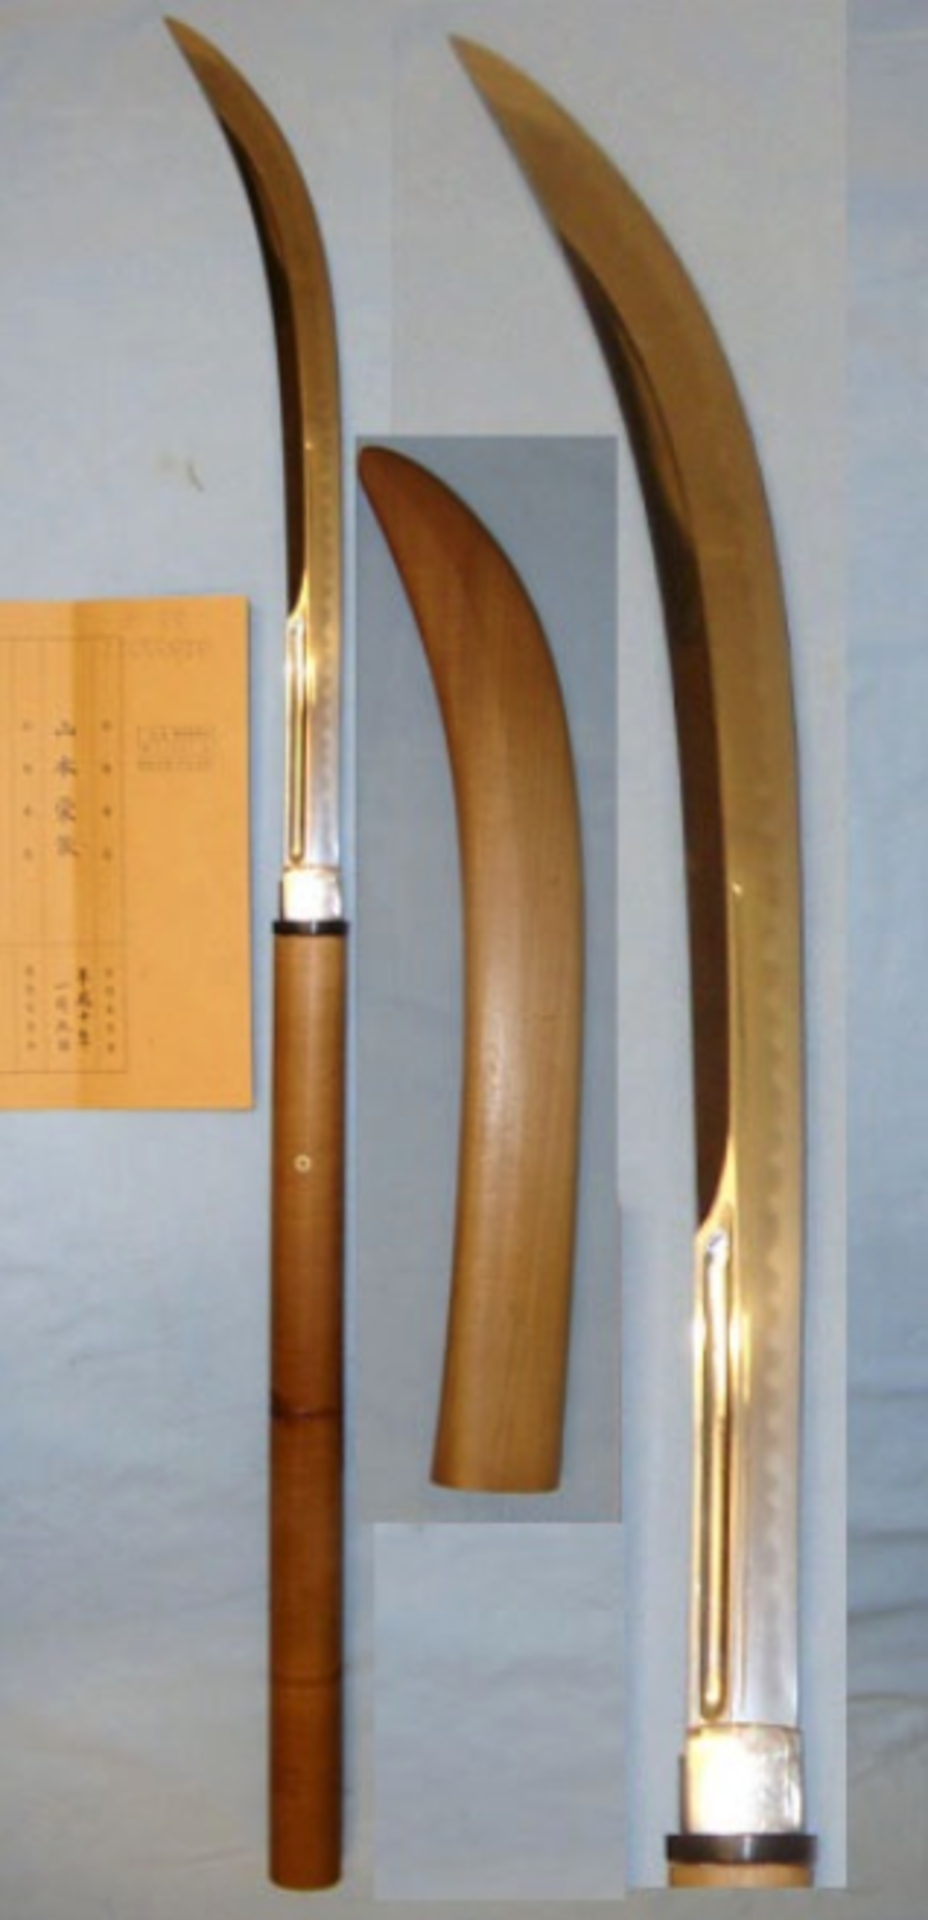 ANCIENT 1558 - 1570 Japanese Naginata Pole Arm Blade With Signed Tang ‘Kanabo Masa Sada - Image 3 of 3